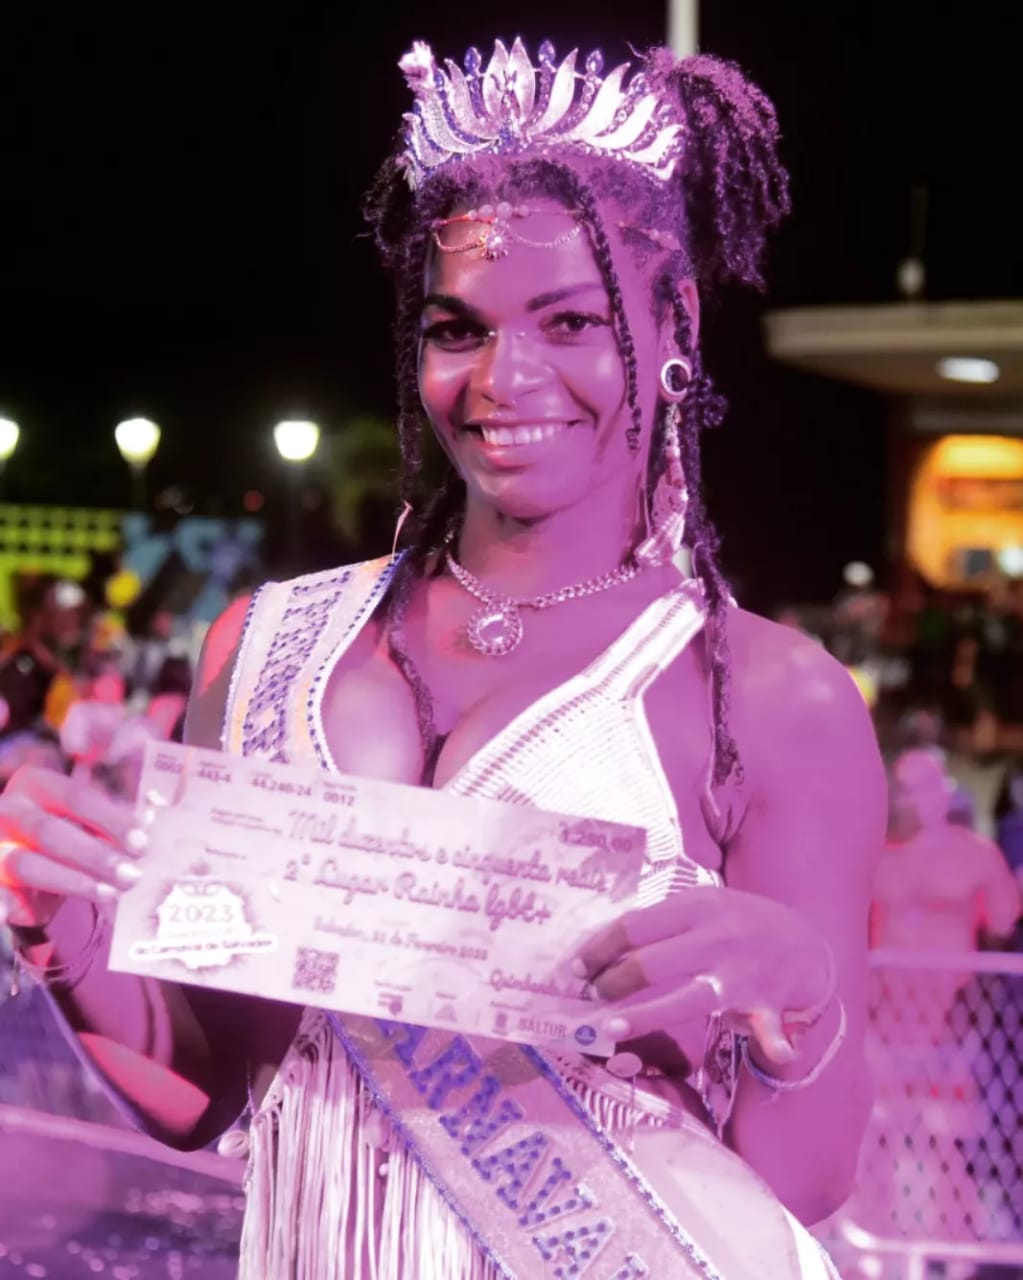 Multiartista camaçariense conquista título de primeira princesa do Carnaval de Salvador